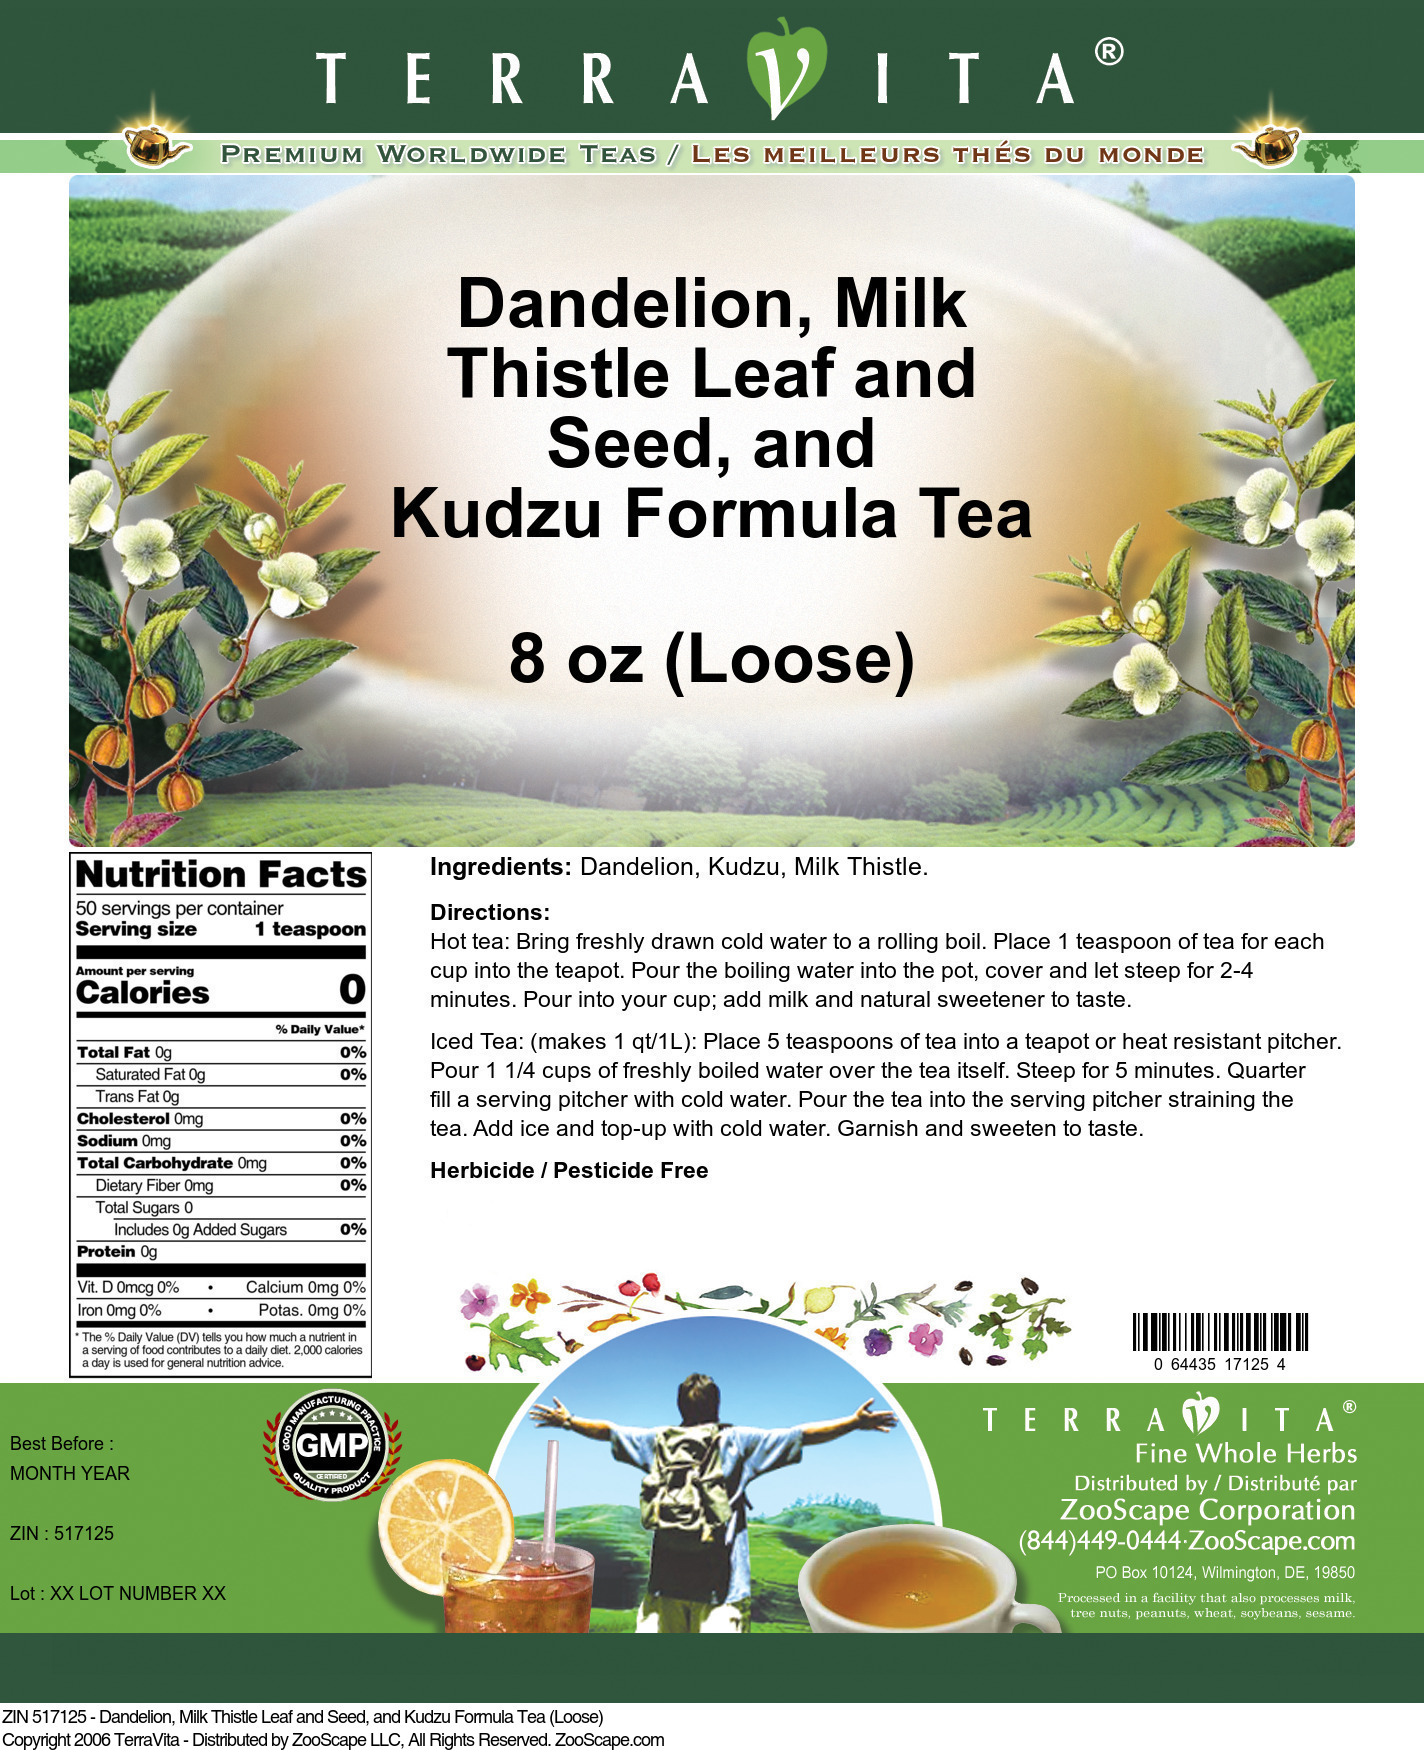 Dandelion, Milk Thistle Leaf and Seed, and Kudzu Formula Tea (Loose) - Label